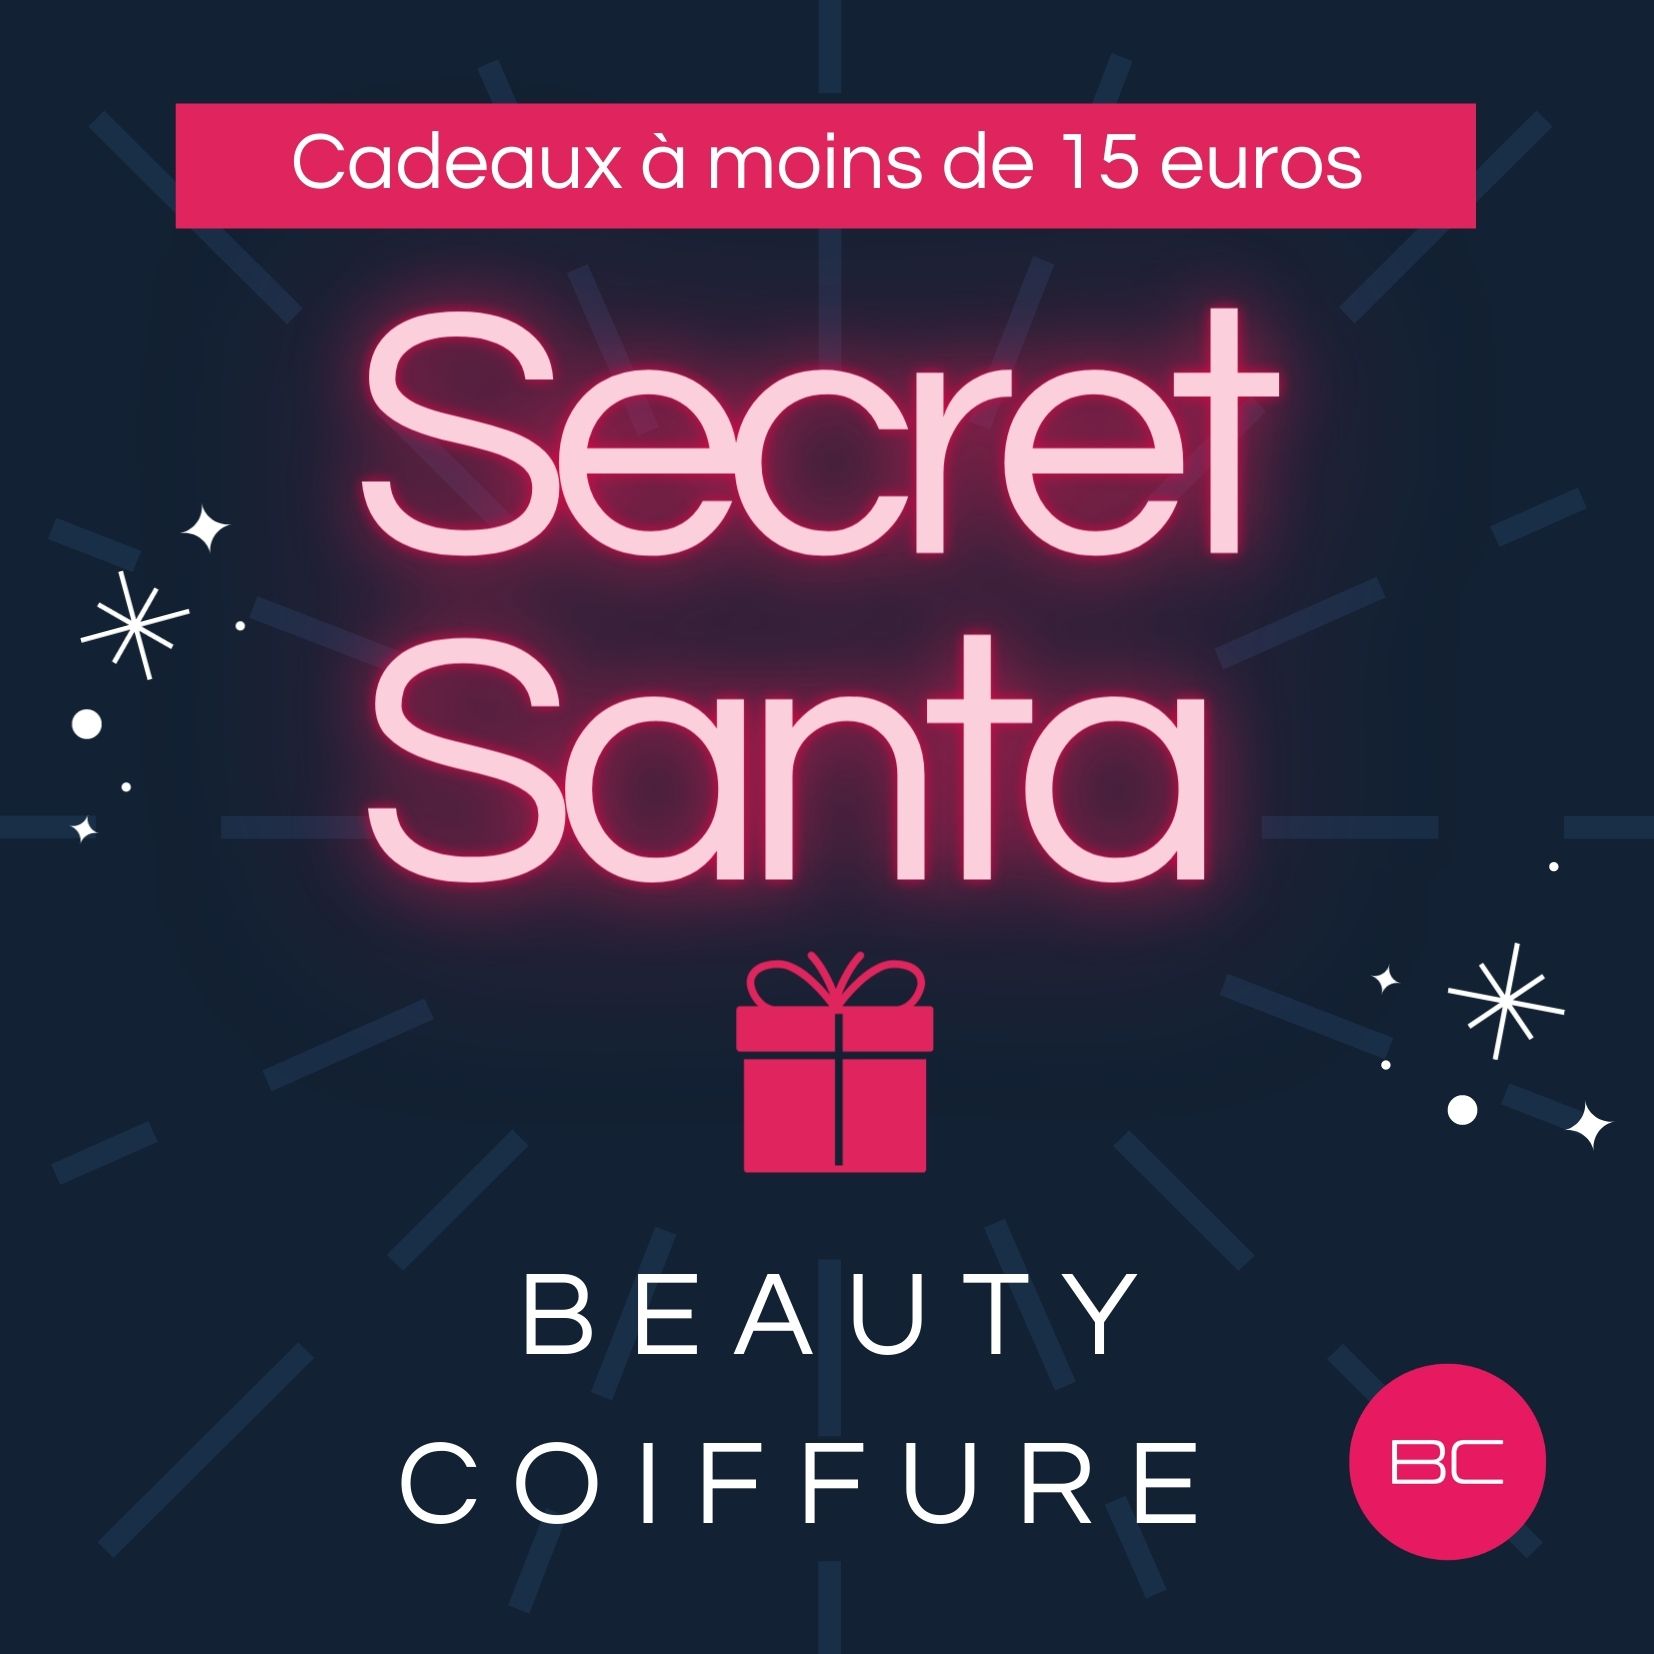 Secret Santa des cadeaux à moins de 15 euros